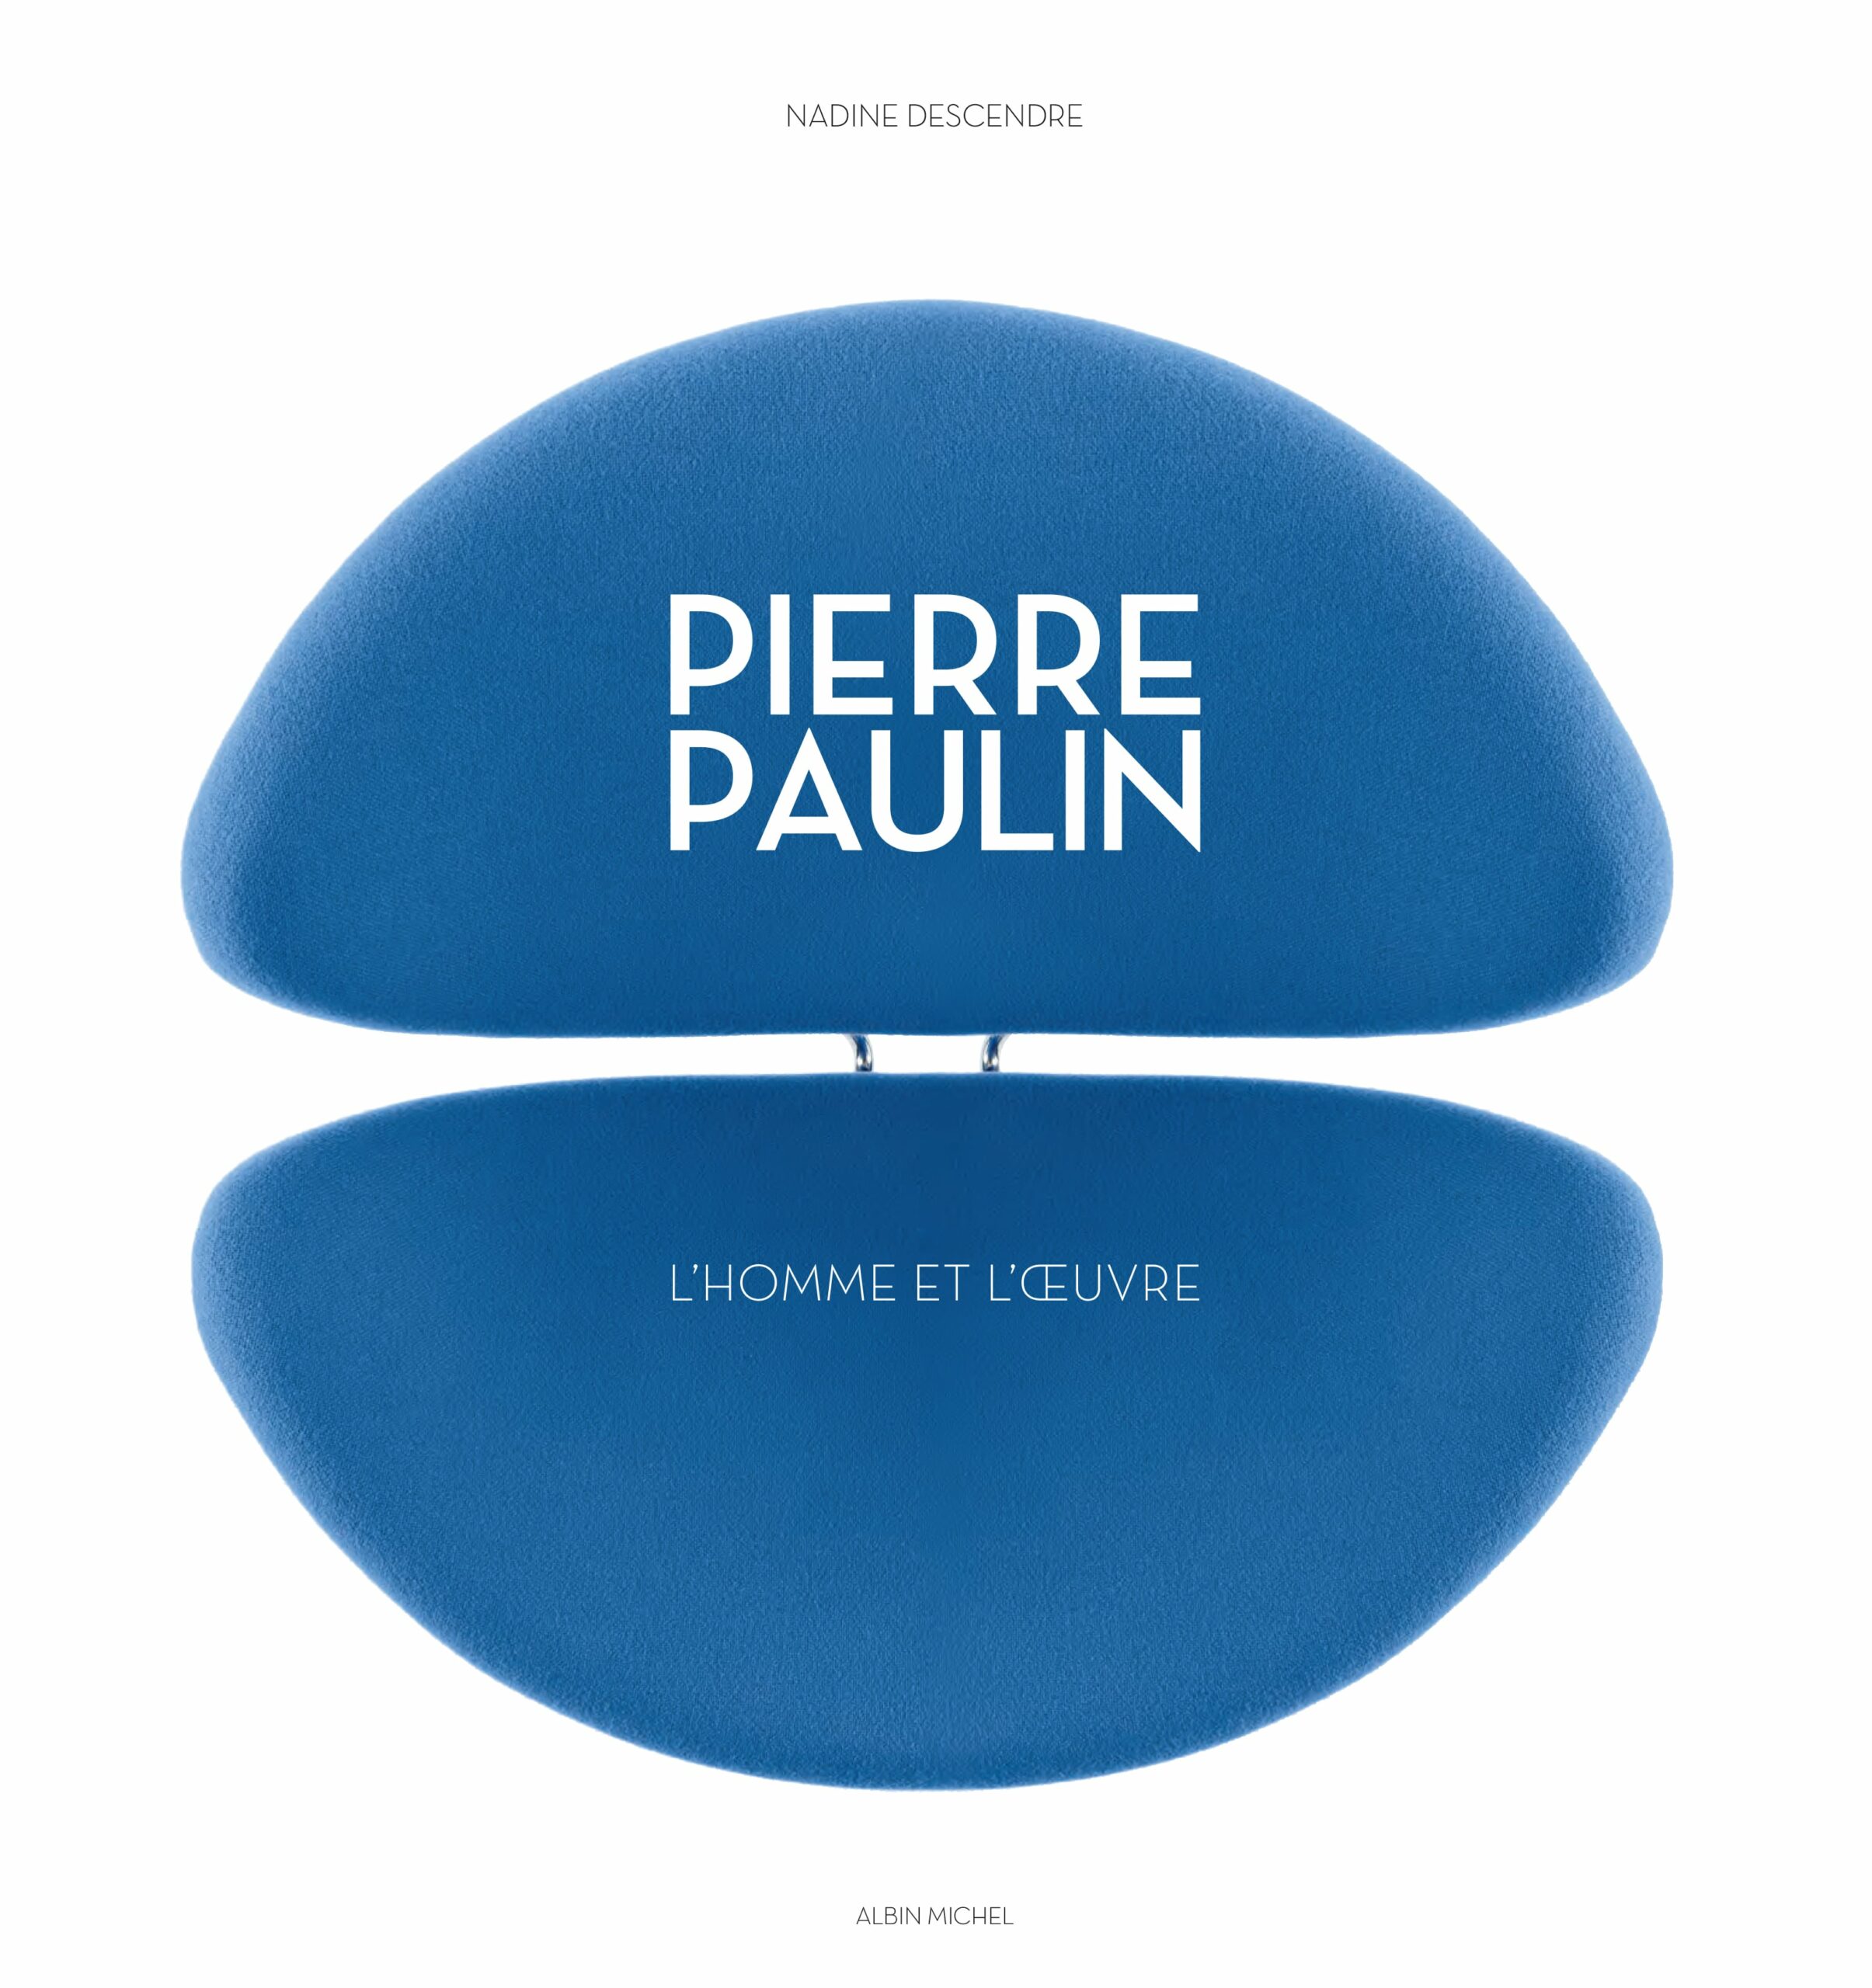 Pierre Paulin, l’homme et l’oeuvre, Nadine Descendre, Albin Michel, Paris, 2014, 260 pages, 49 €